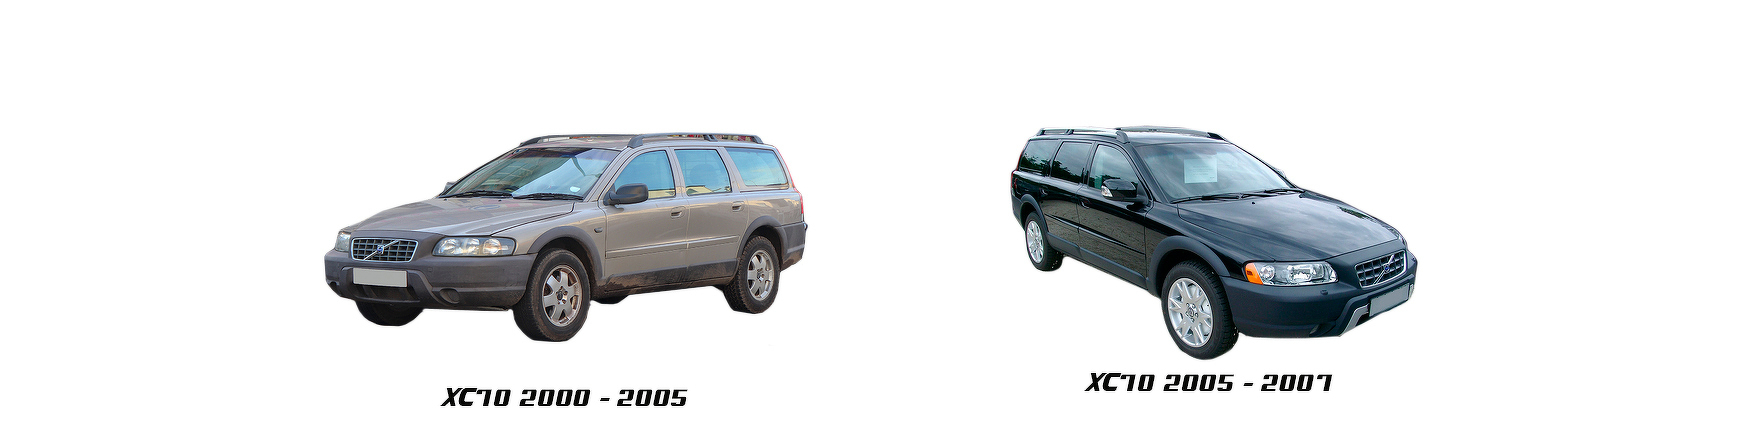 Piezas y Recambios de Volvo XC70 de 2000 a 2007 | Veramauto.es